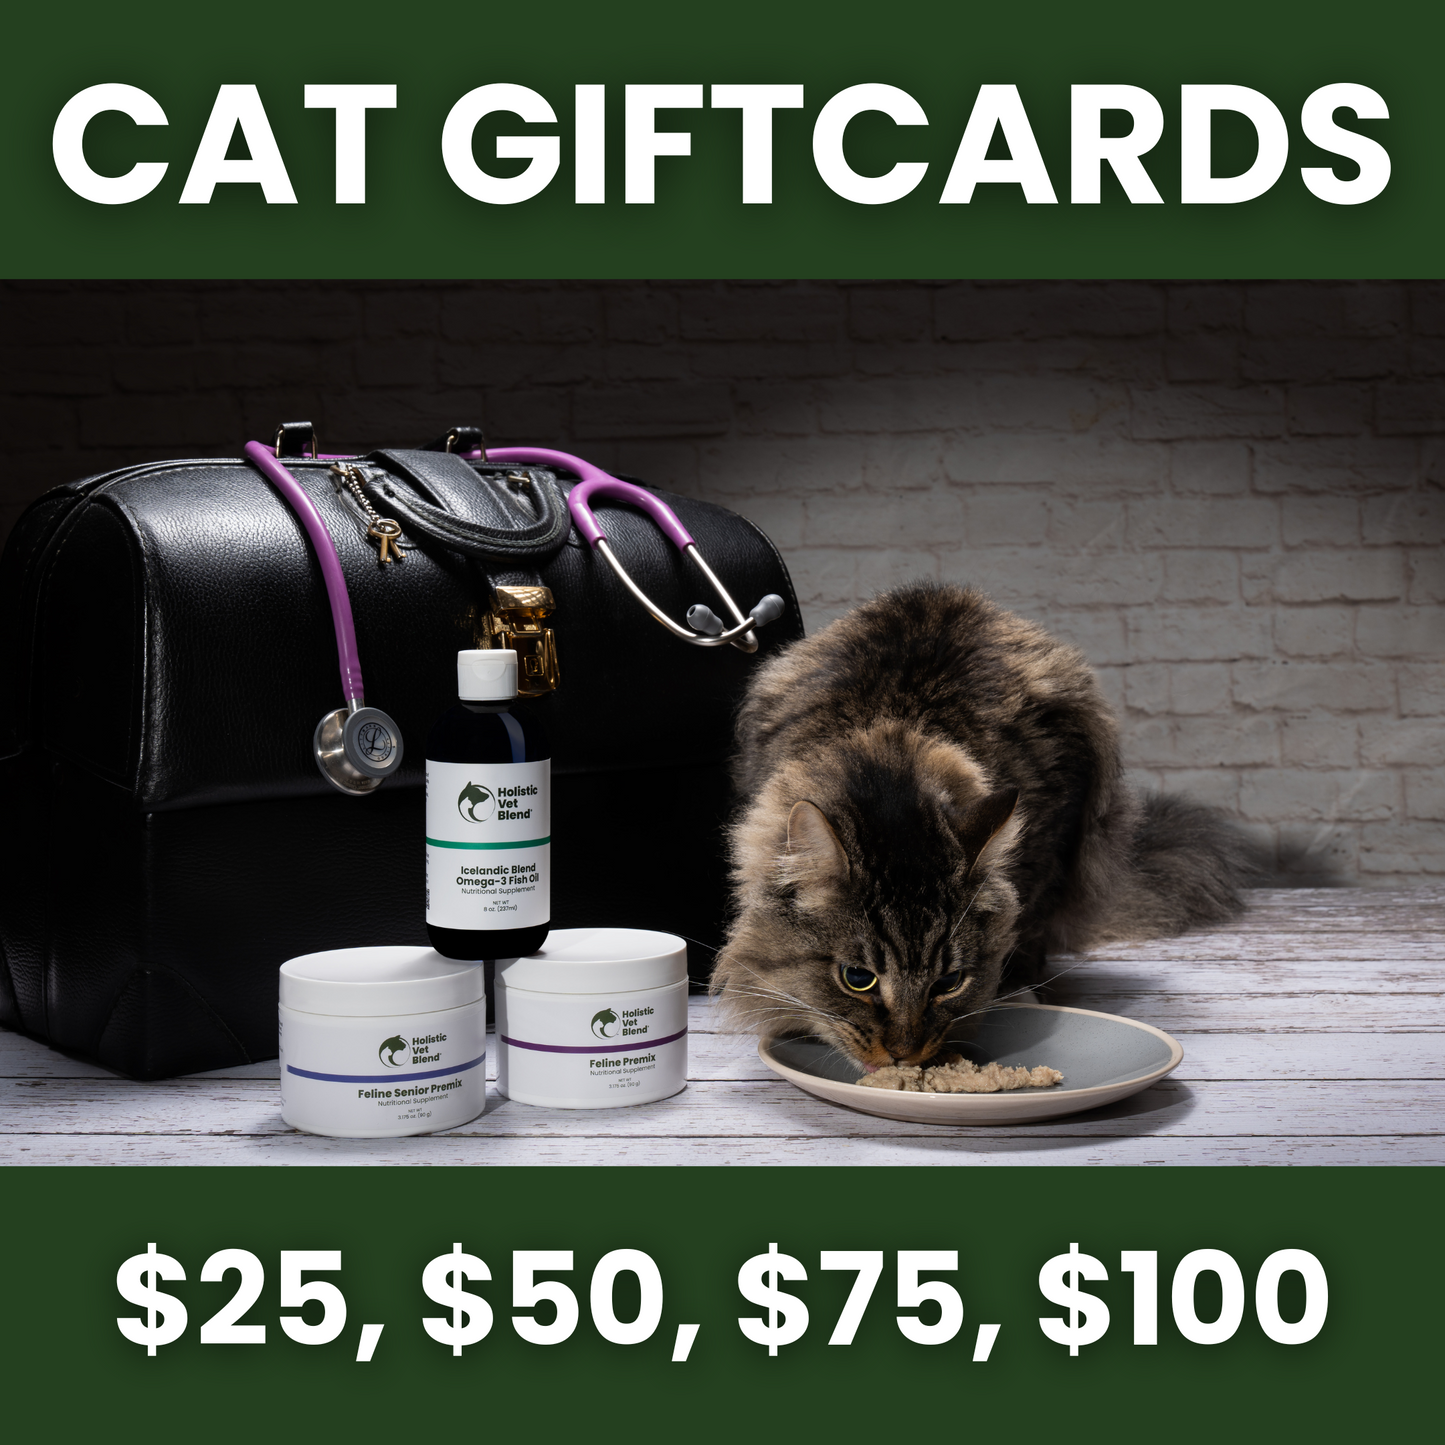 Gift Card for Cat Lovers - Holistic Vet Blend Store - Holistic Vet Blend